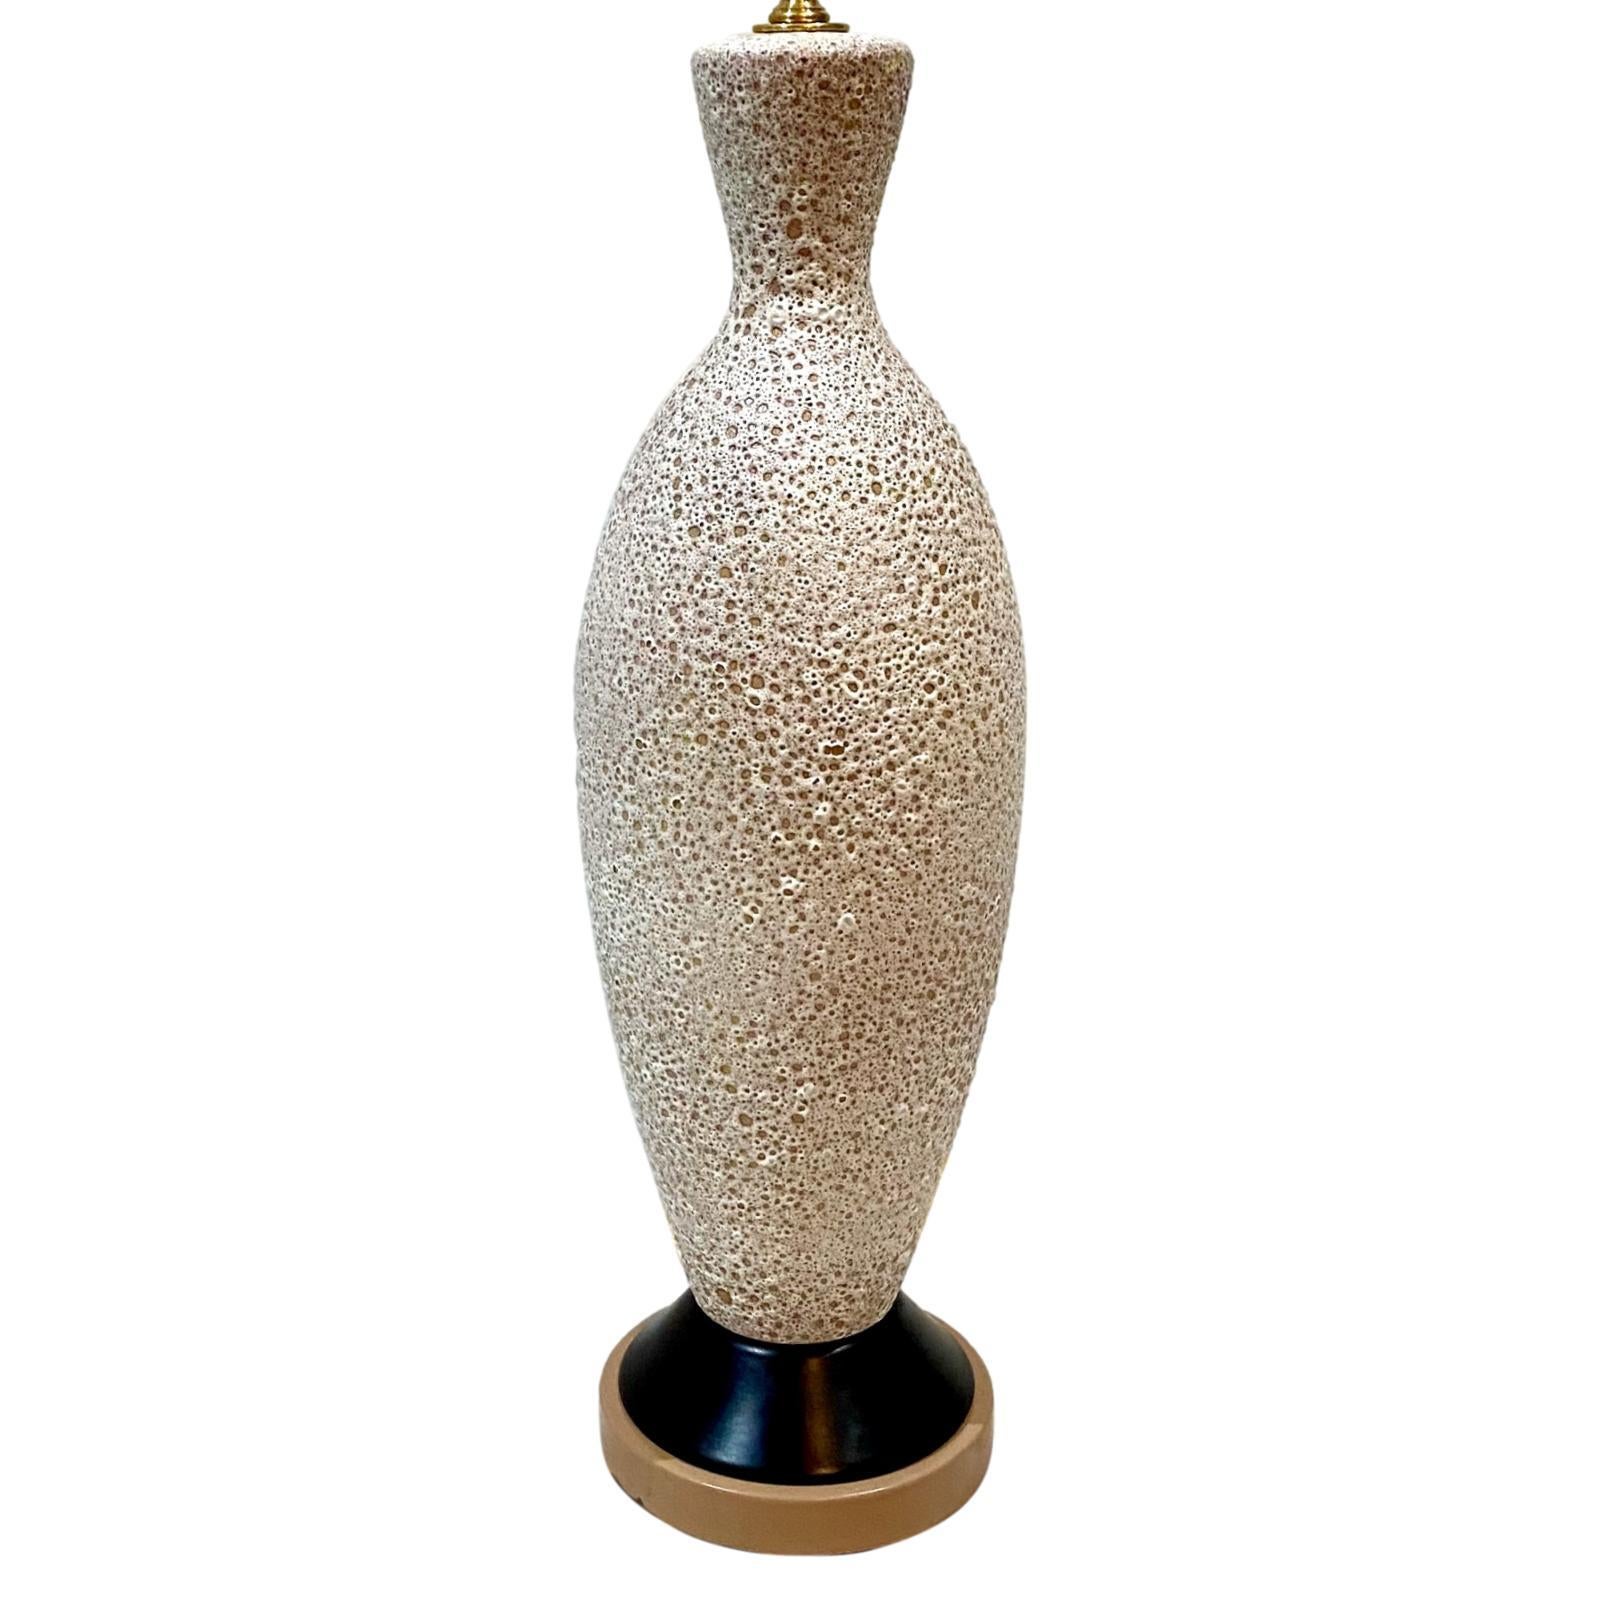 Eine einzelne italienische Tischlampe aus Keramik mit strukturierter Glasur aus den 1950er Jahren.

Abmessungen:
Höhe des Körpers: 22.5